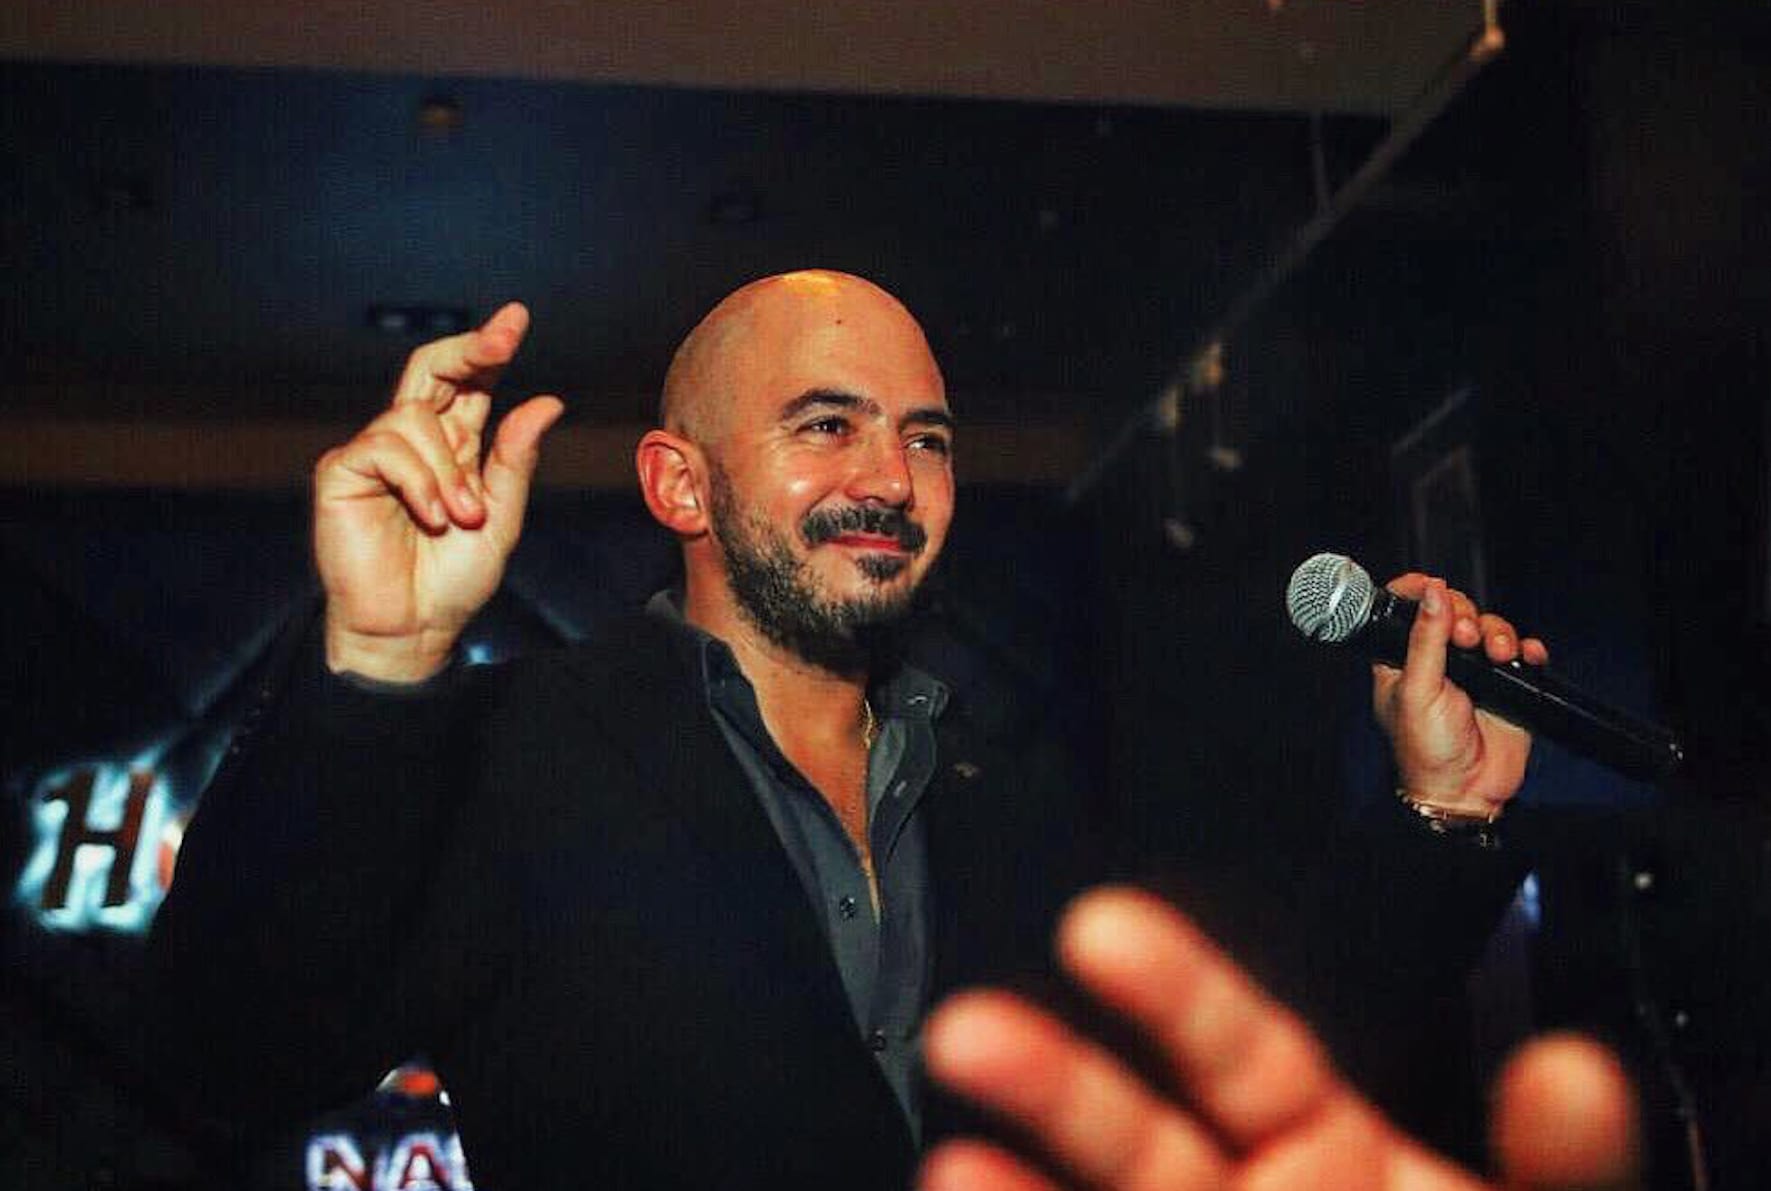 مغني مصري يعتذر بعد أن رفض التقاط صورة مع معجب.. ومغردون يهاجمونه